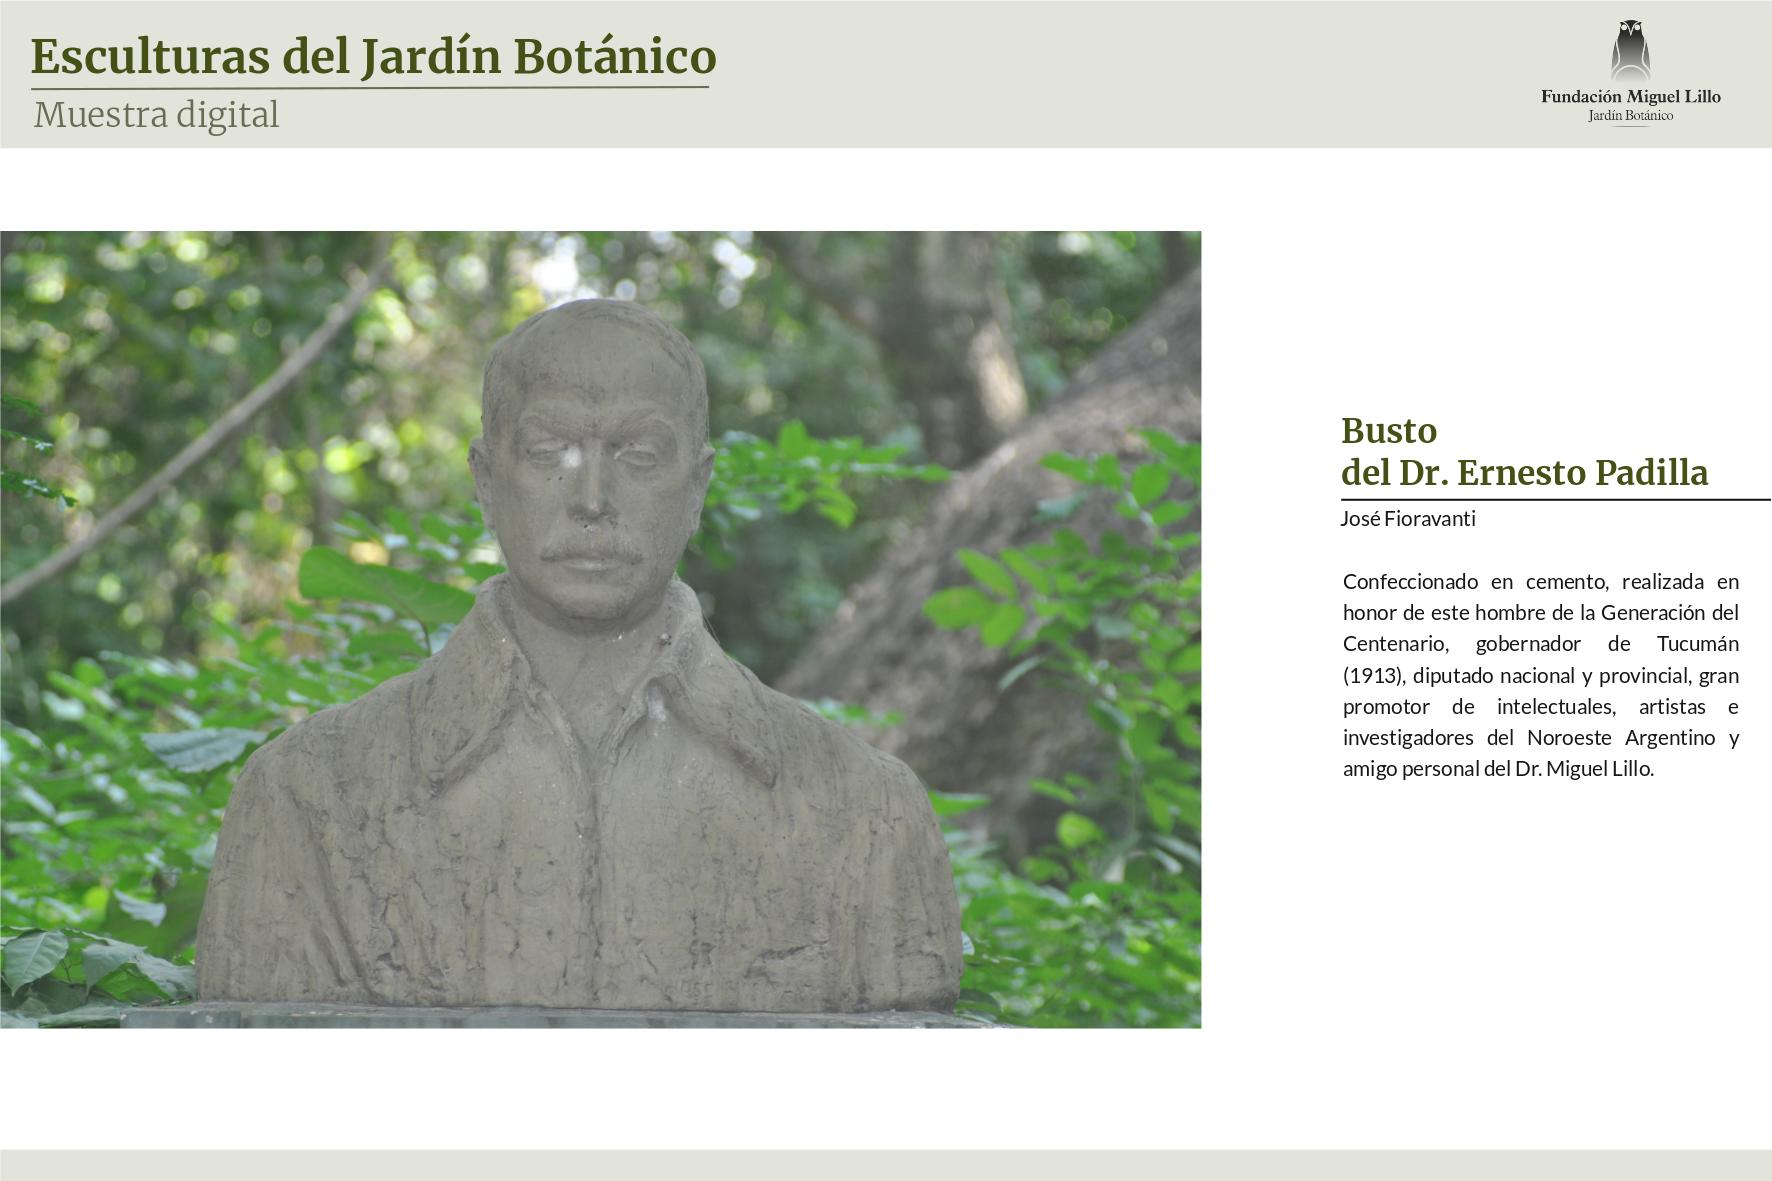 Busto del Dr. Ernesto Padilla (José Fioravanti, Fundación Miguel Lillo)